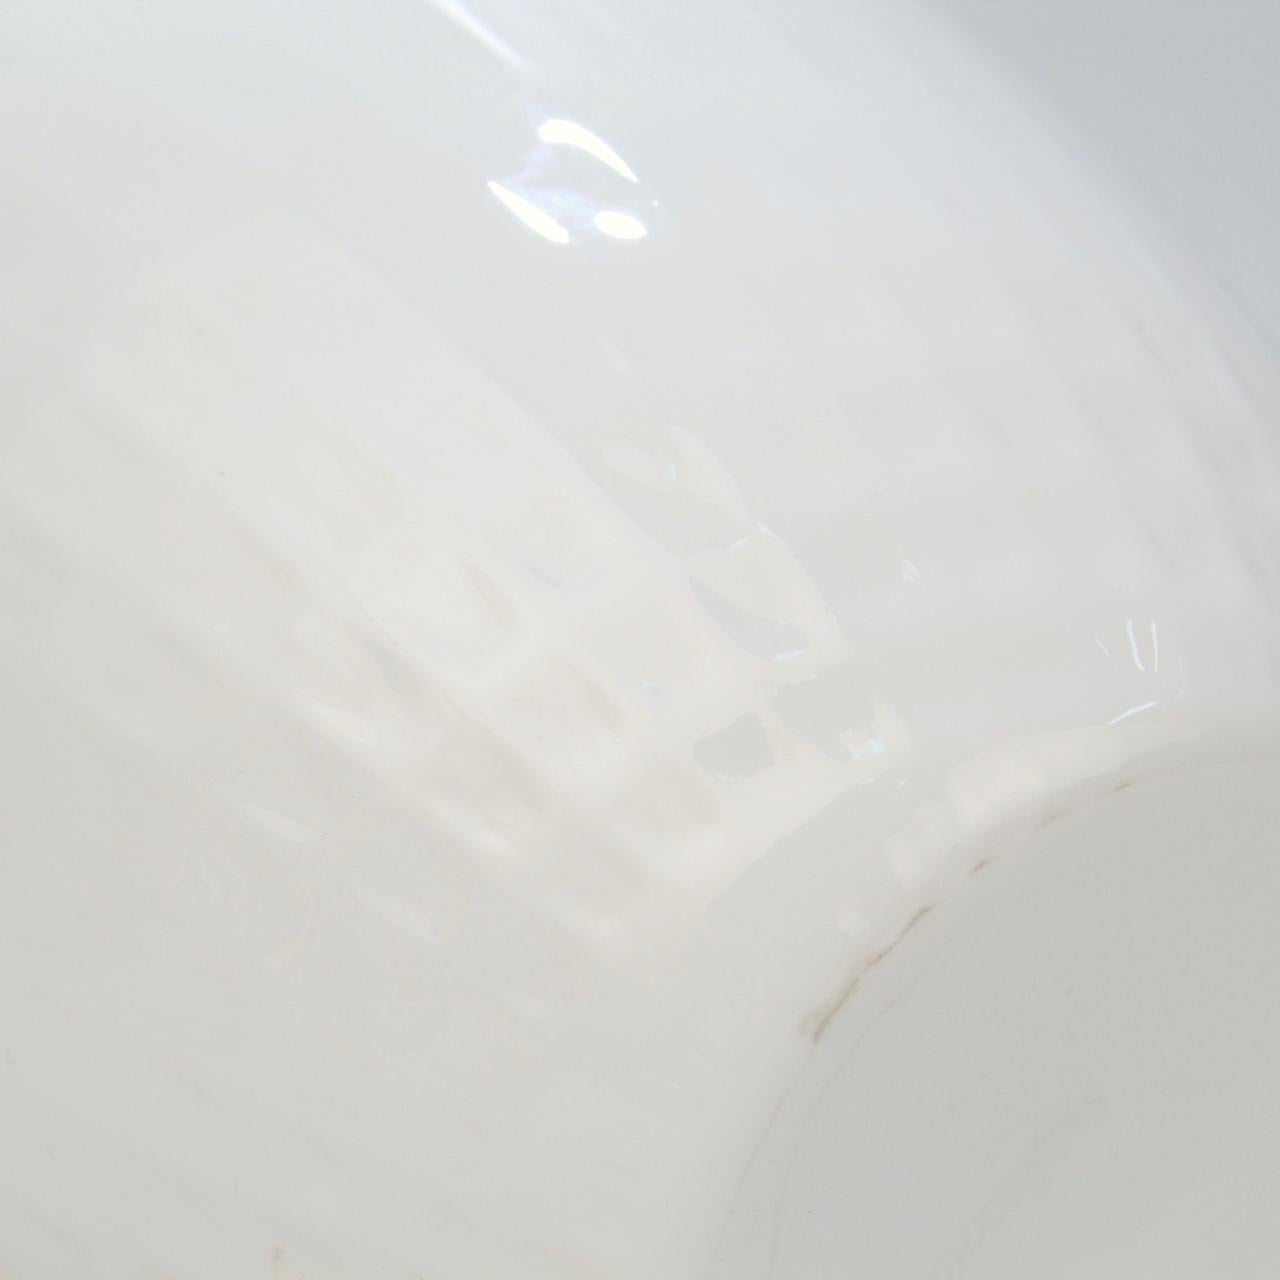 Snöljus Snowlight White Art Glass Vase by Ingegerd Råman for Orrefors For Sale 1